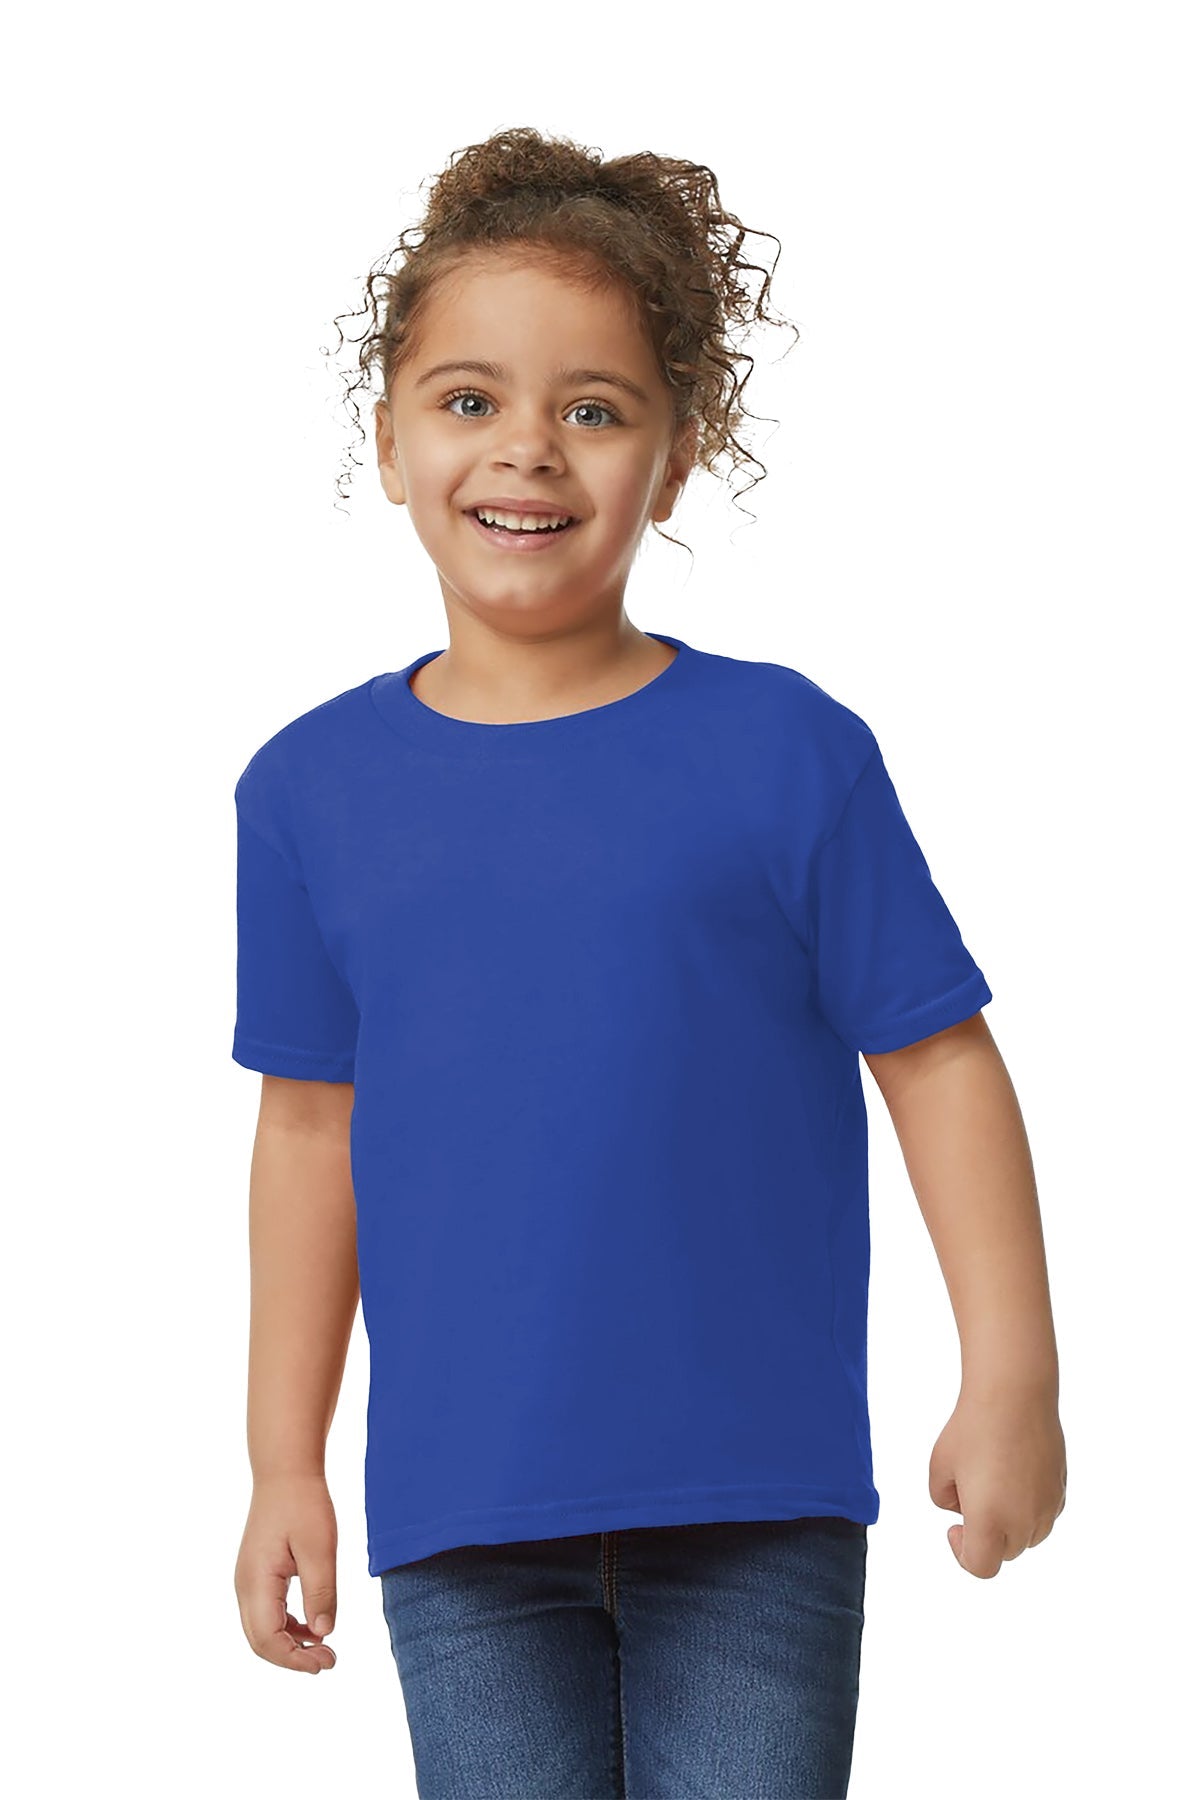 Gilden 5100P Toddler T-Shirt 3T / Royal